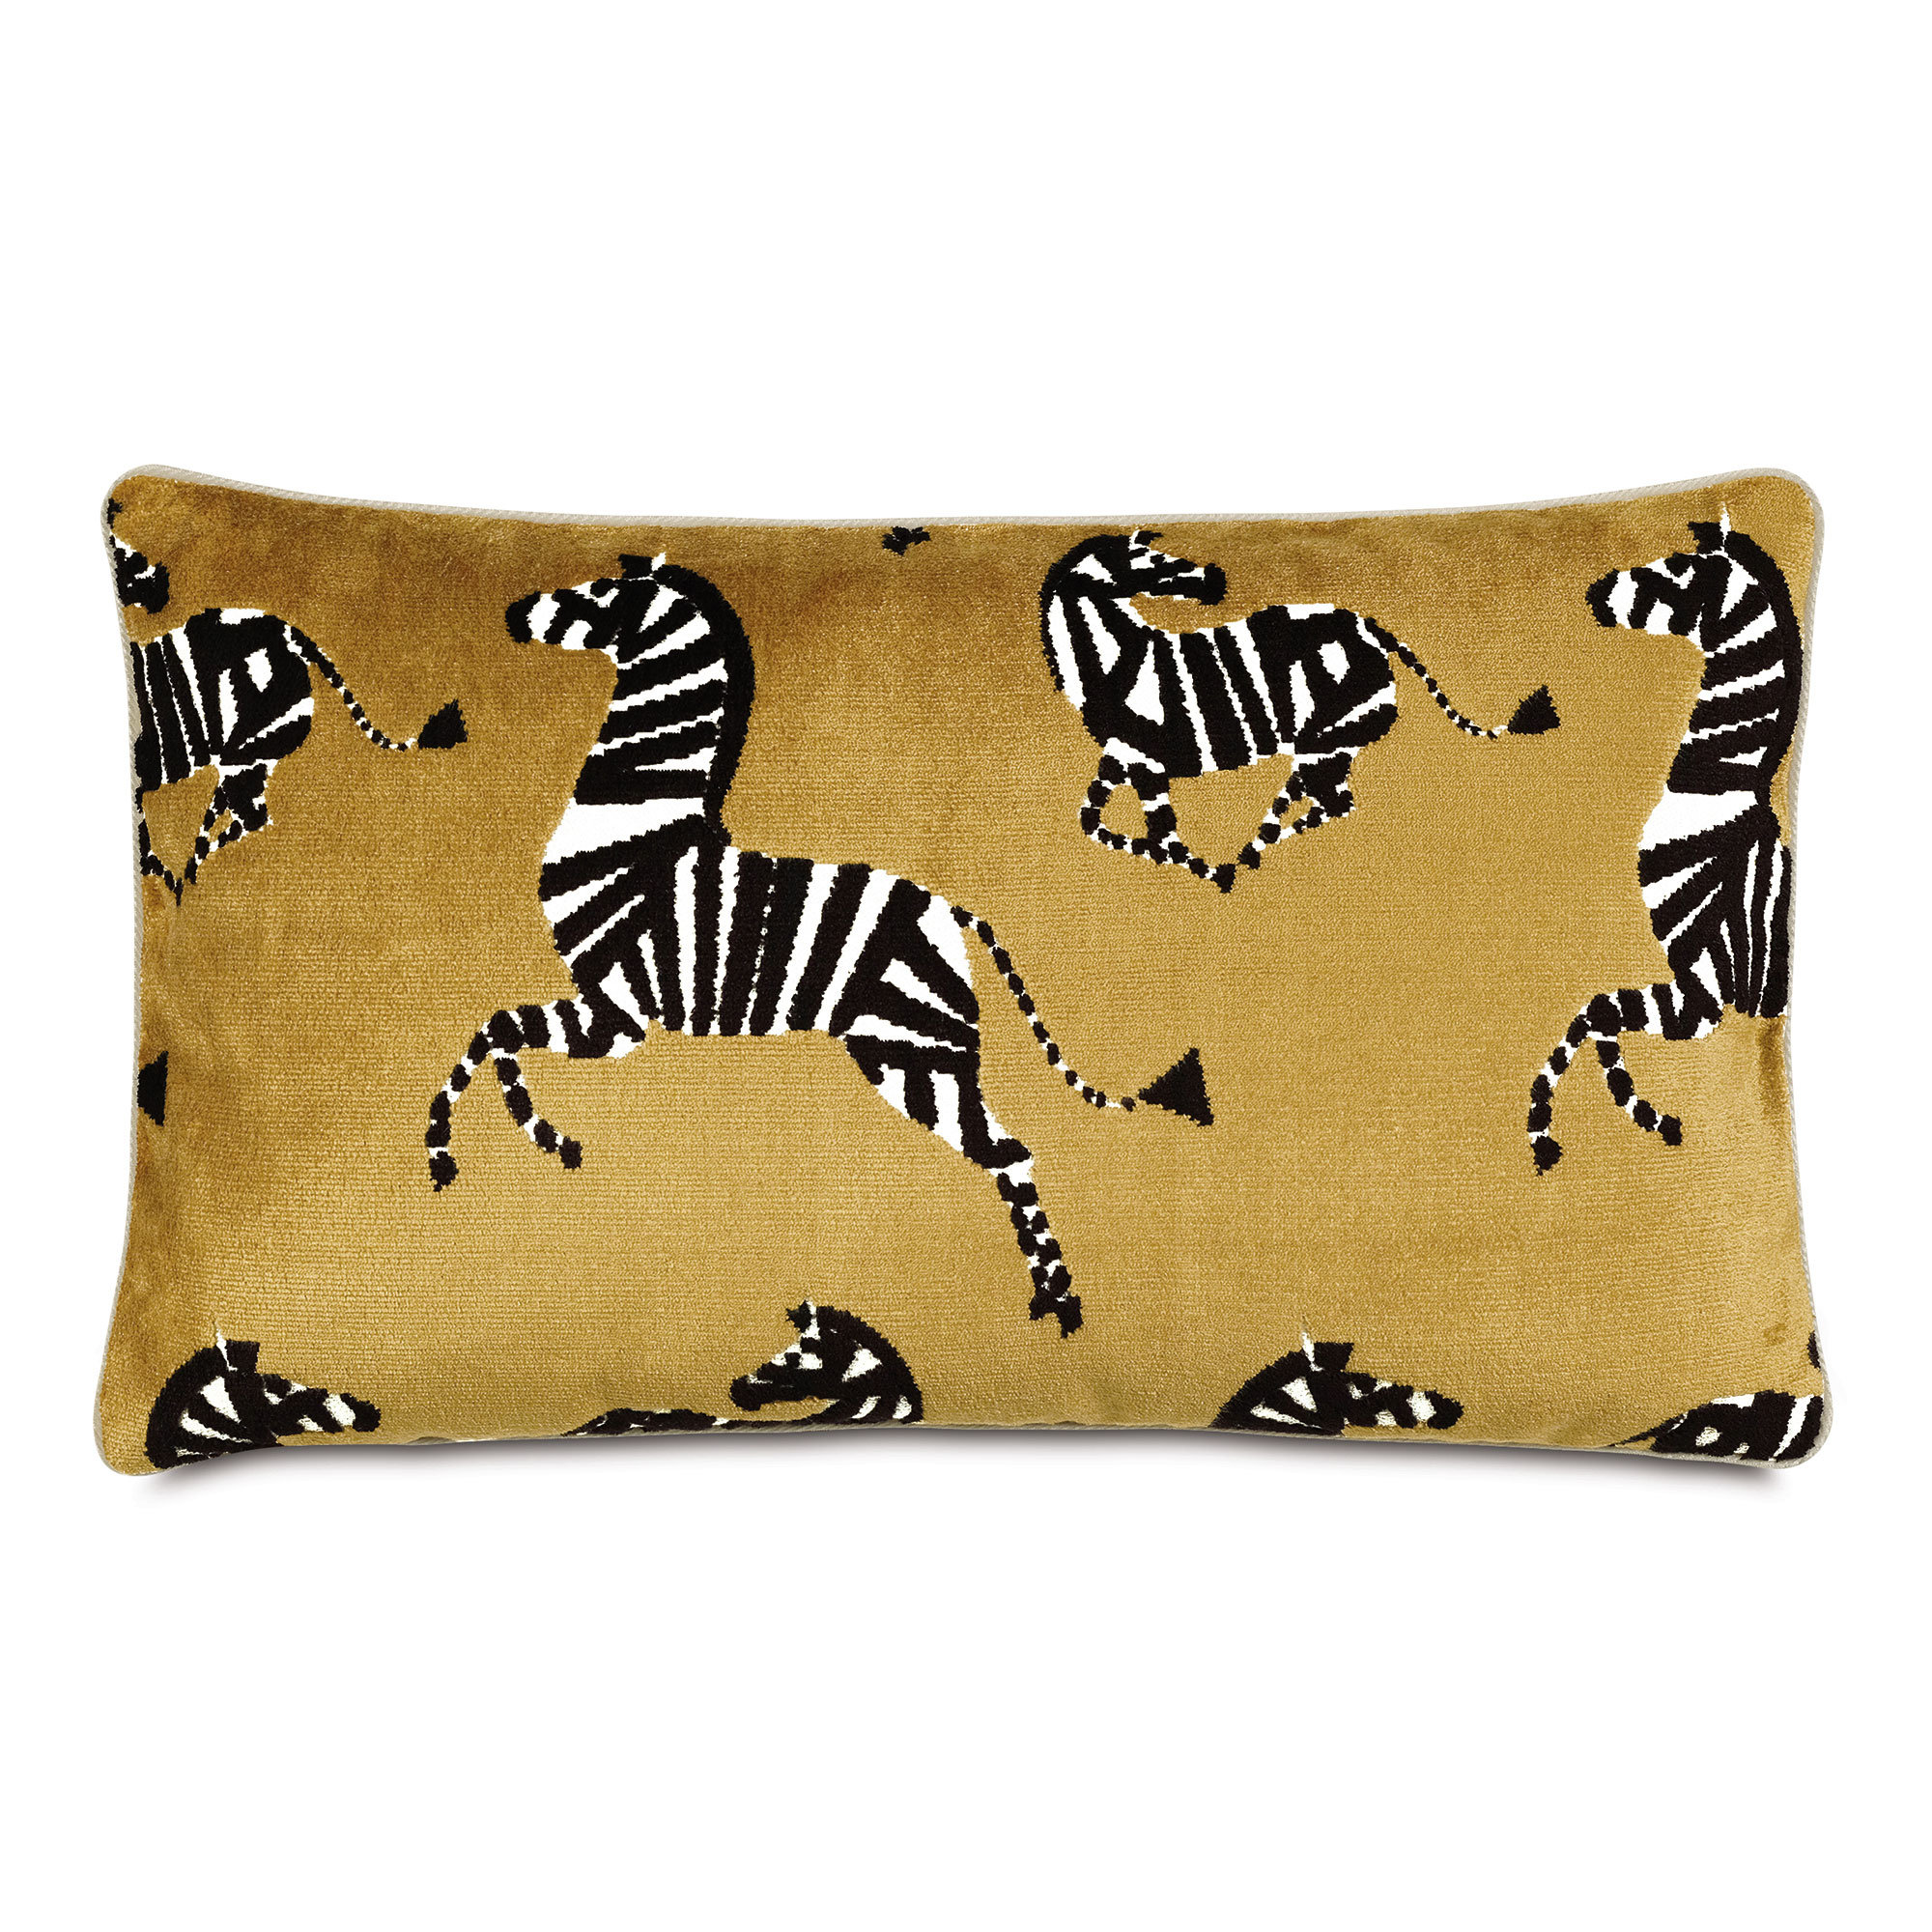 https://assets.wfcdn.com/im/30261191/compr-r85/2128/212864291/tenenbaum-zebra-decorative-pillow-cover-insert.jpg